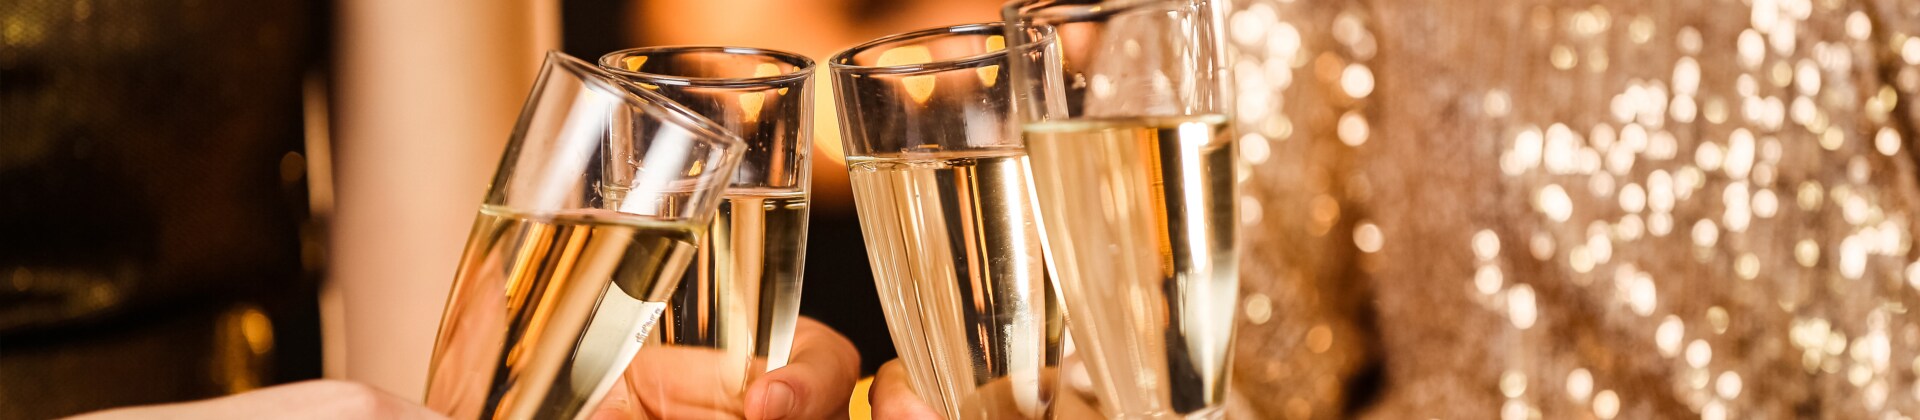 De verschillen tussen prosecco, cava en champagne op een rij